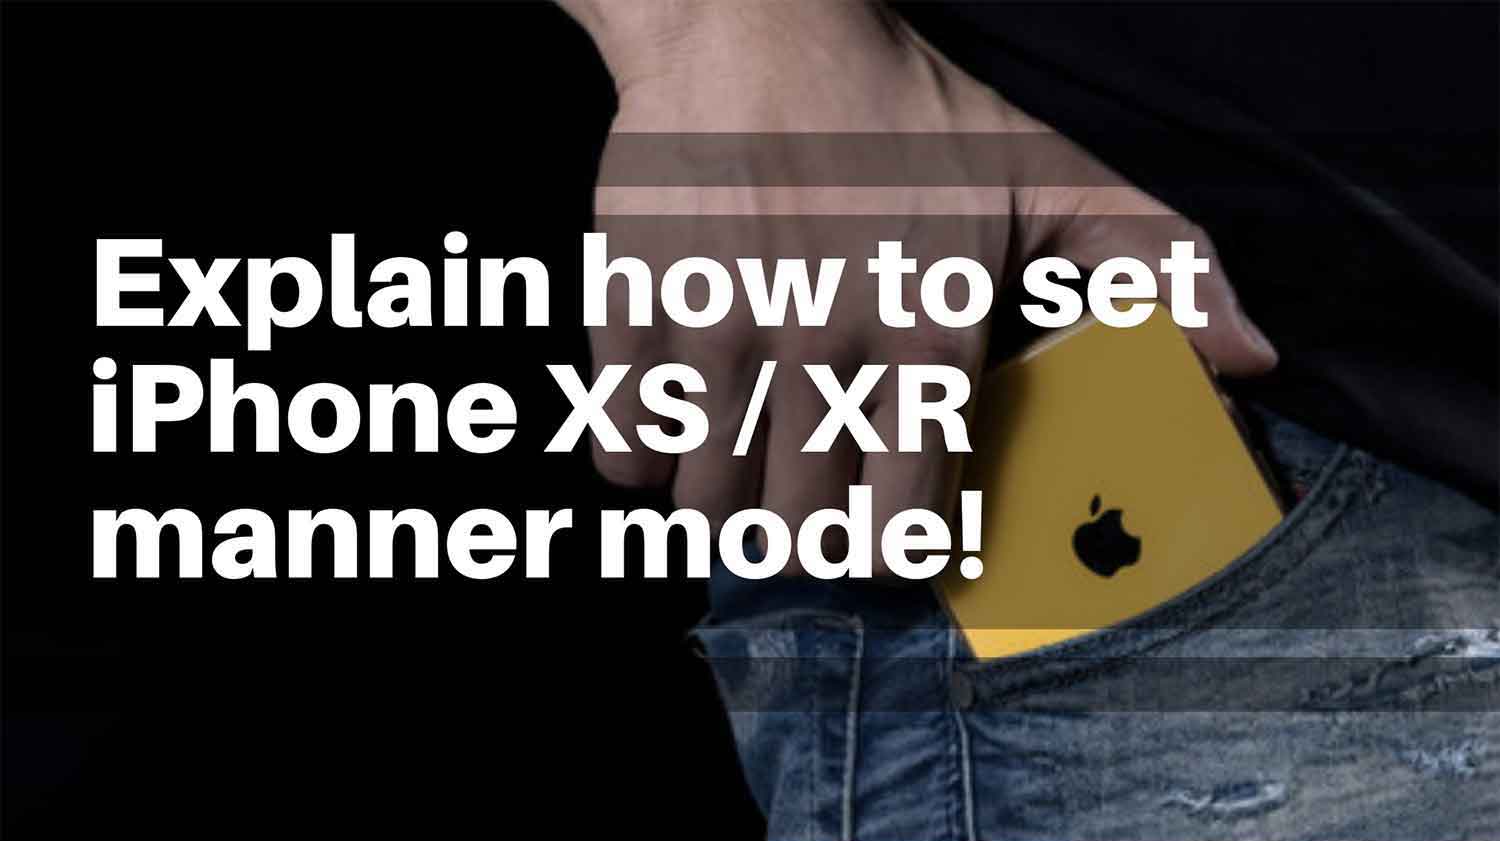 set-iPhone-XS-XR-manner-mode!